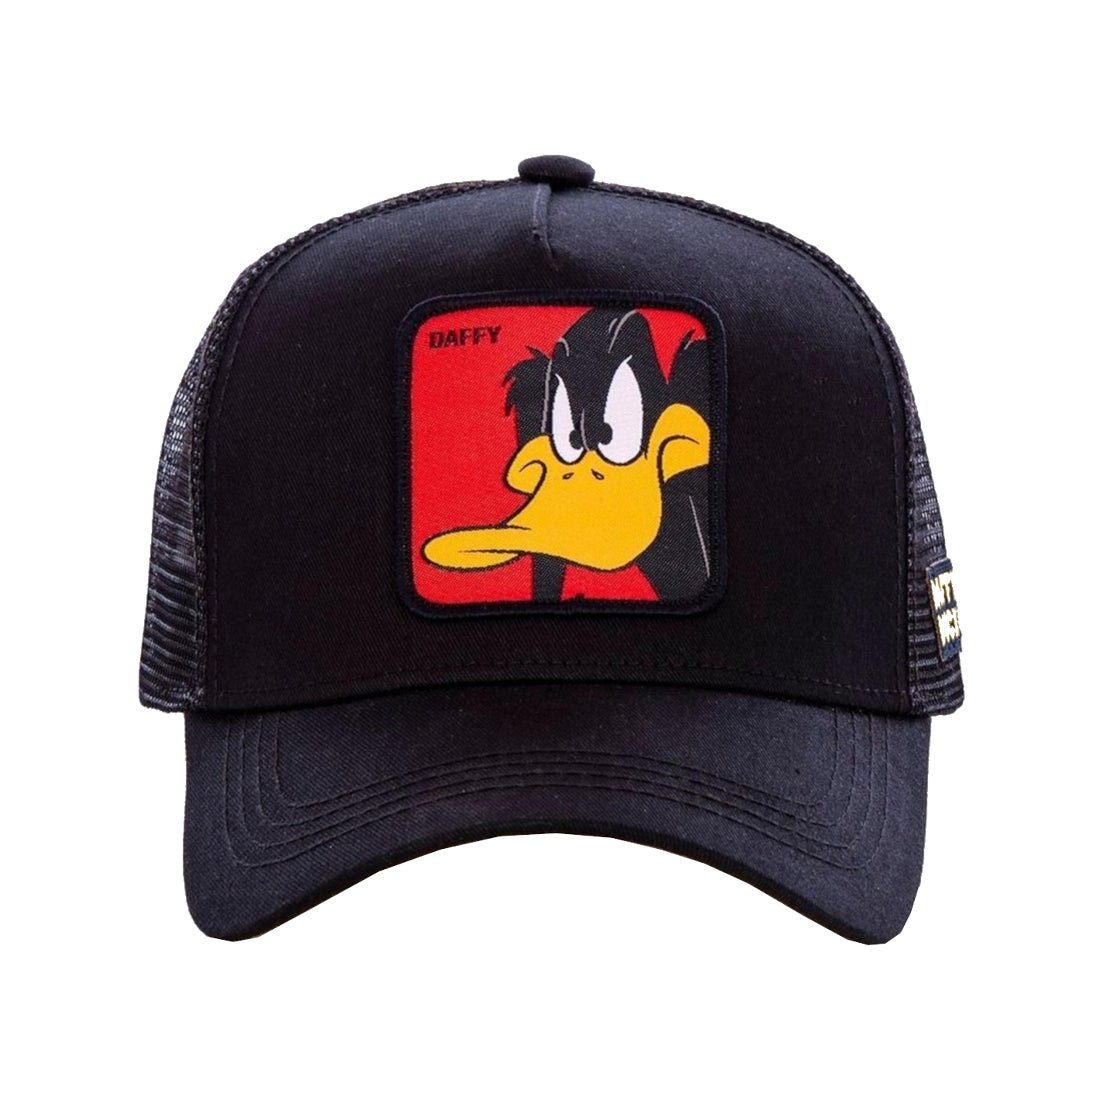 Queue Caps Daffy Duck Cap - Black - قبعة - Store 974 | ستور ٩٧٤